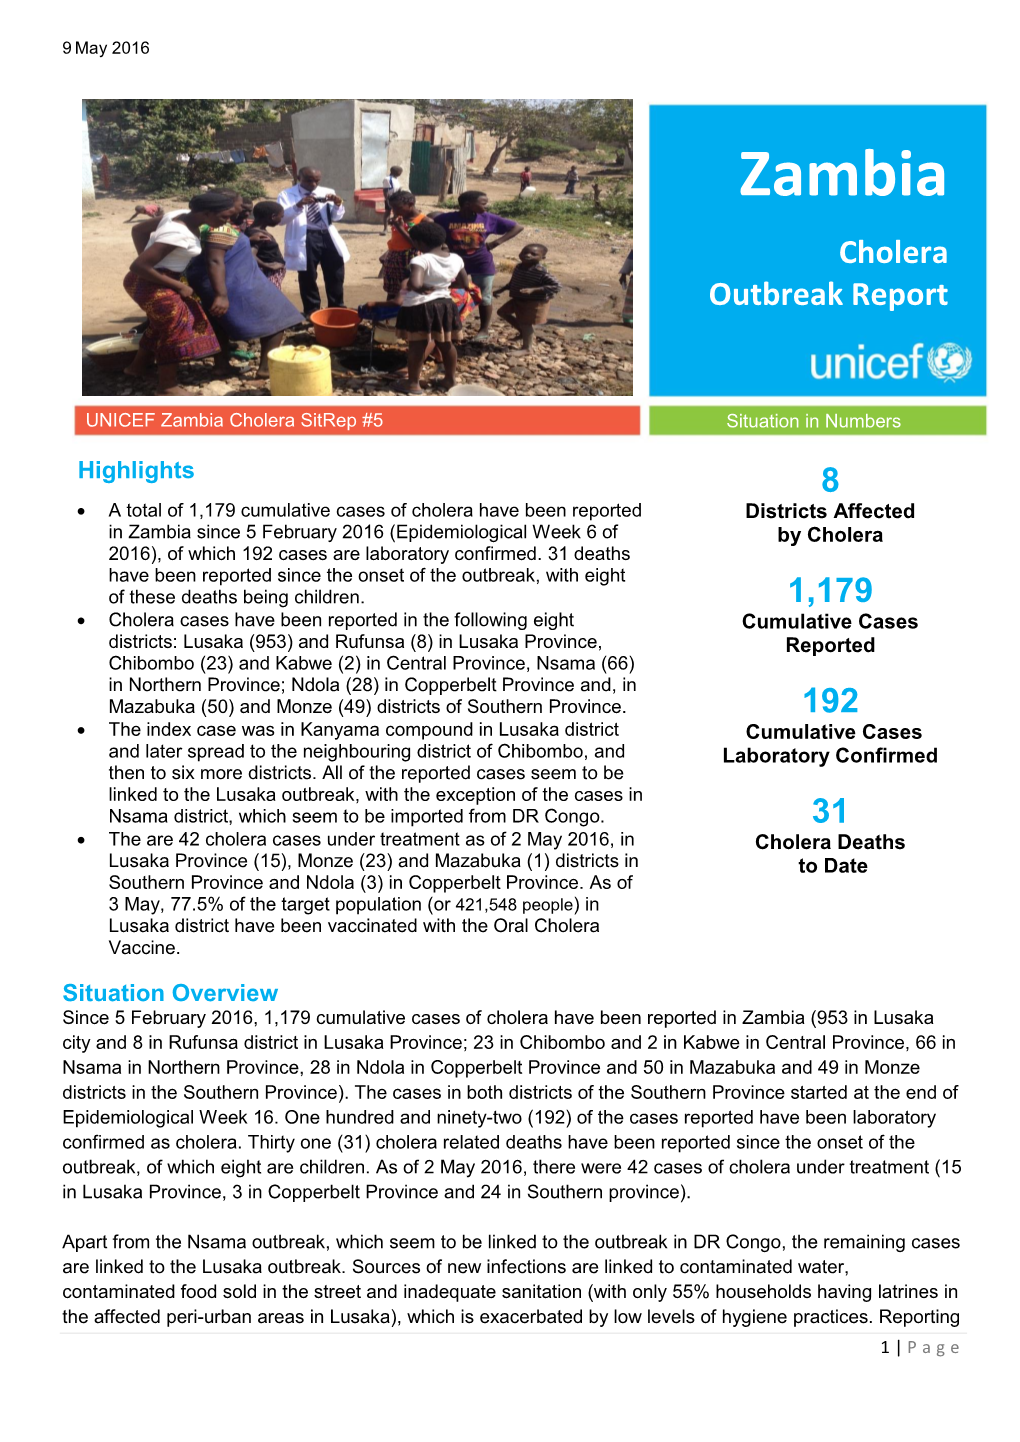 Zambia Cholera Outbreak Report